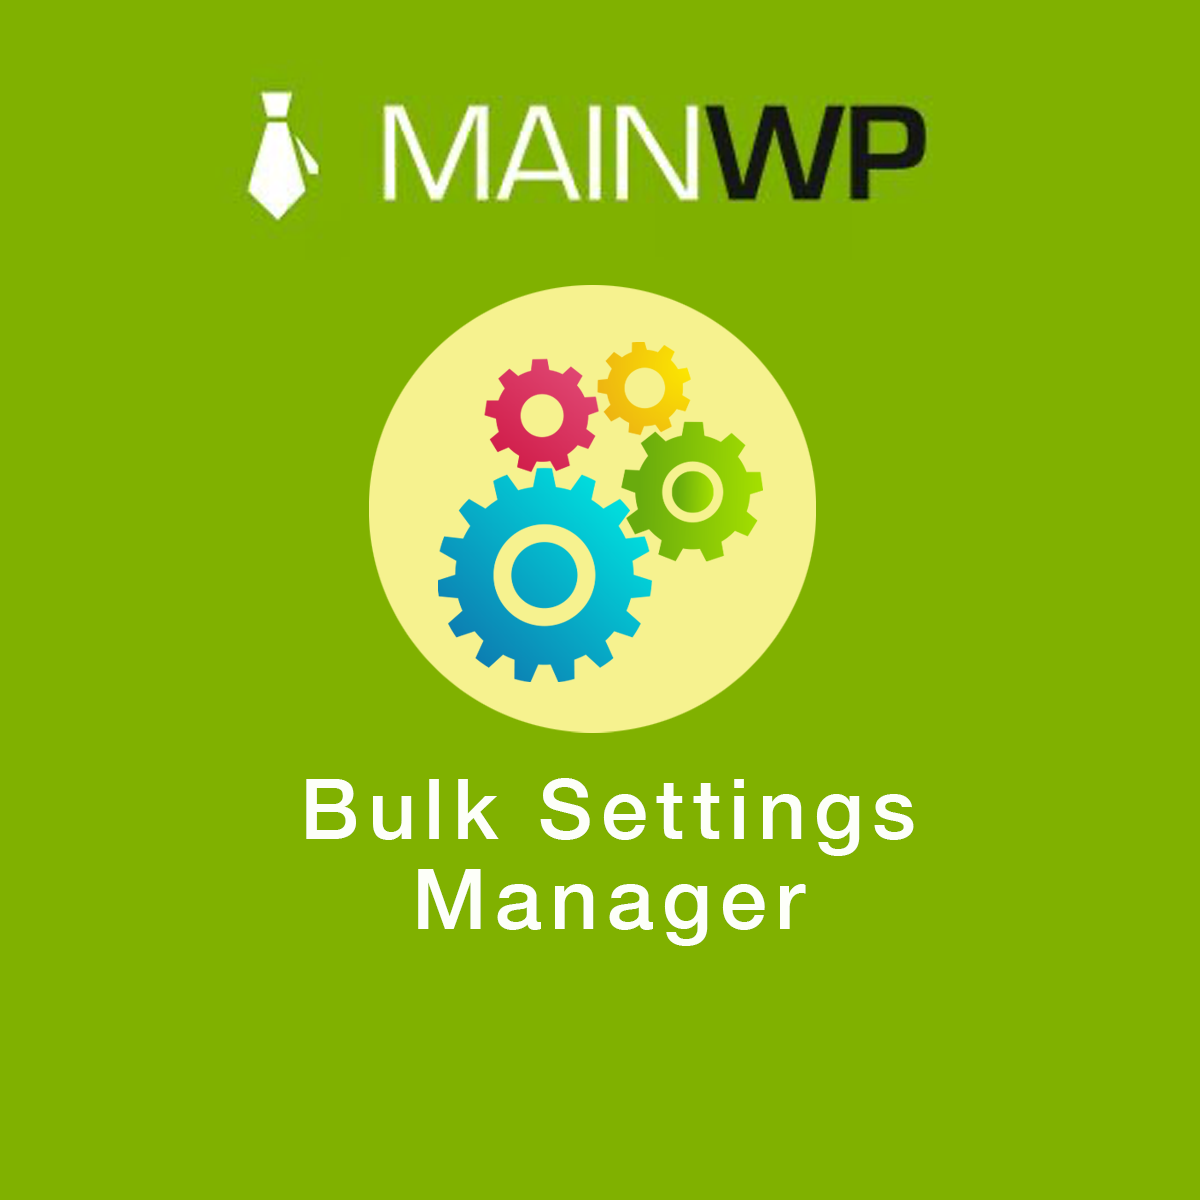 دانلود افزونه MainWP Bulk Settings Manager